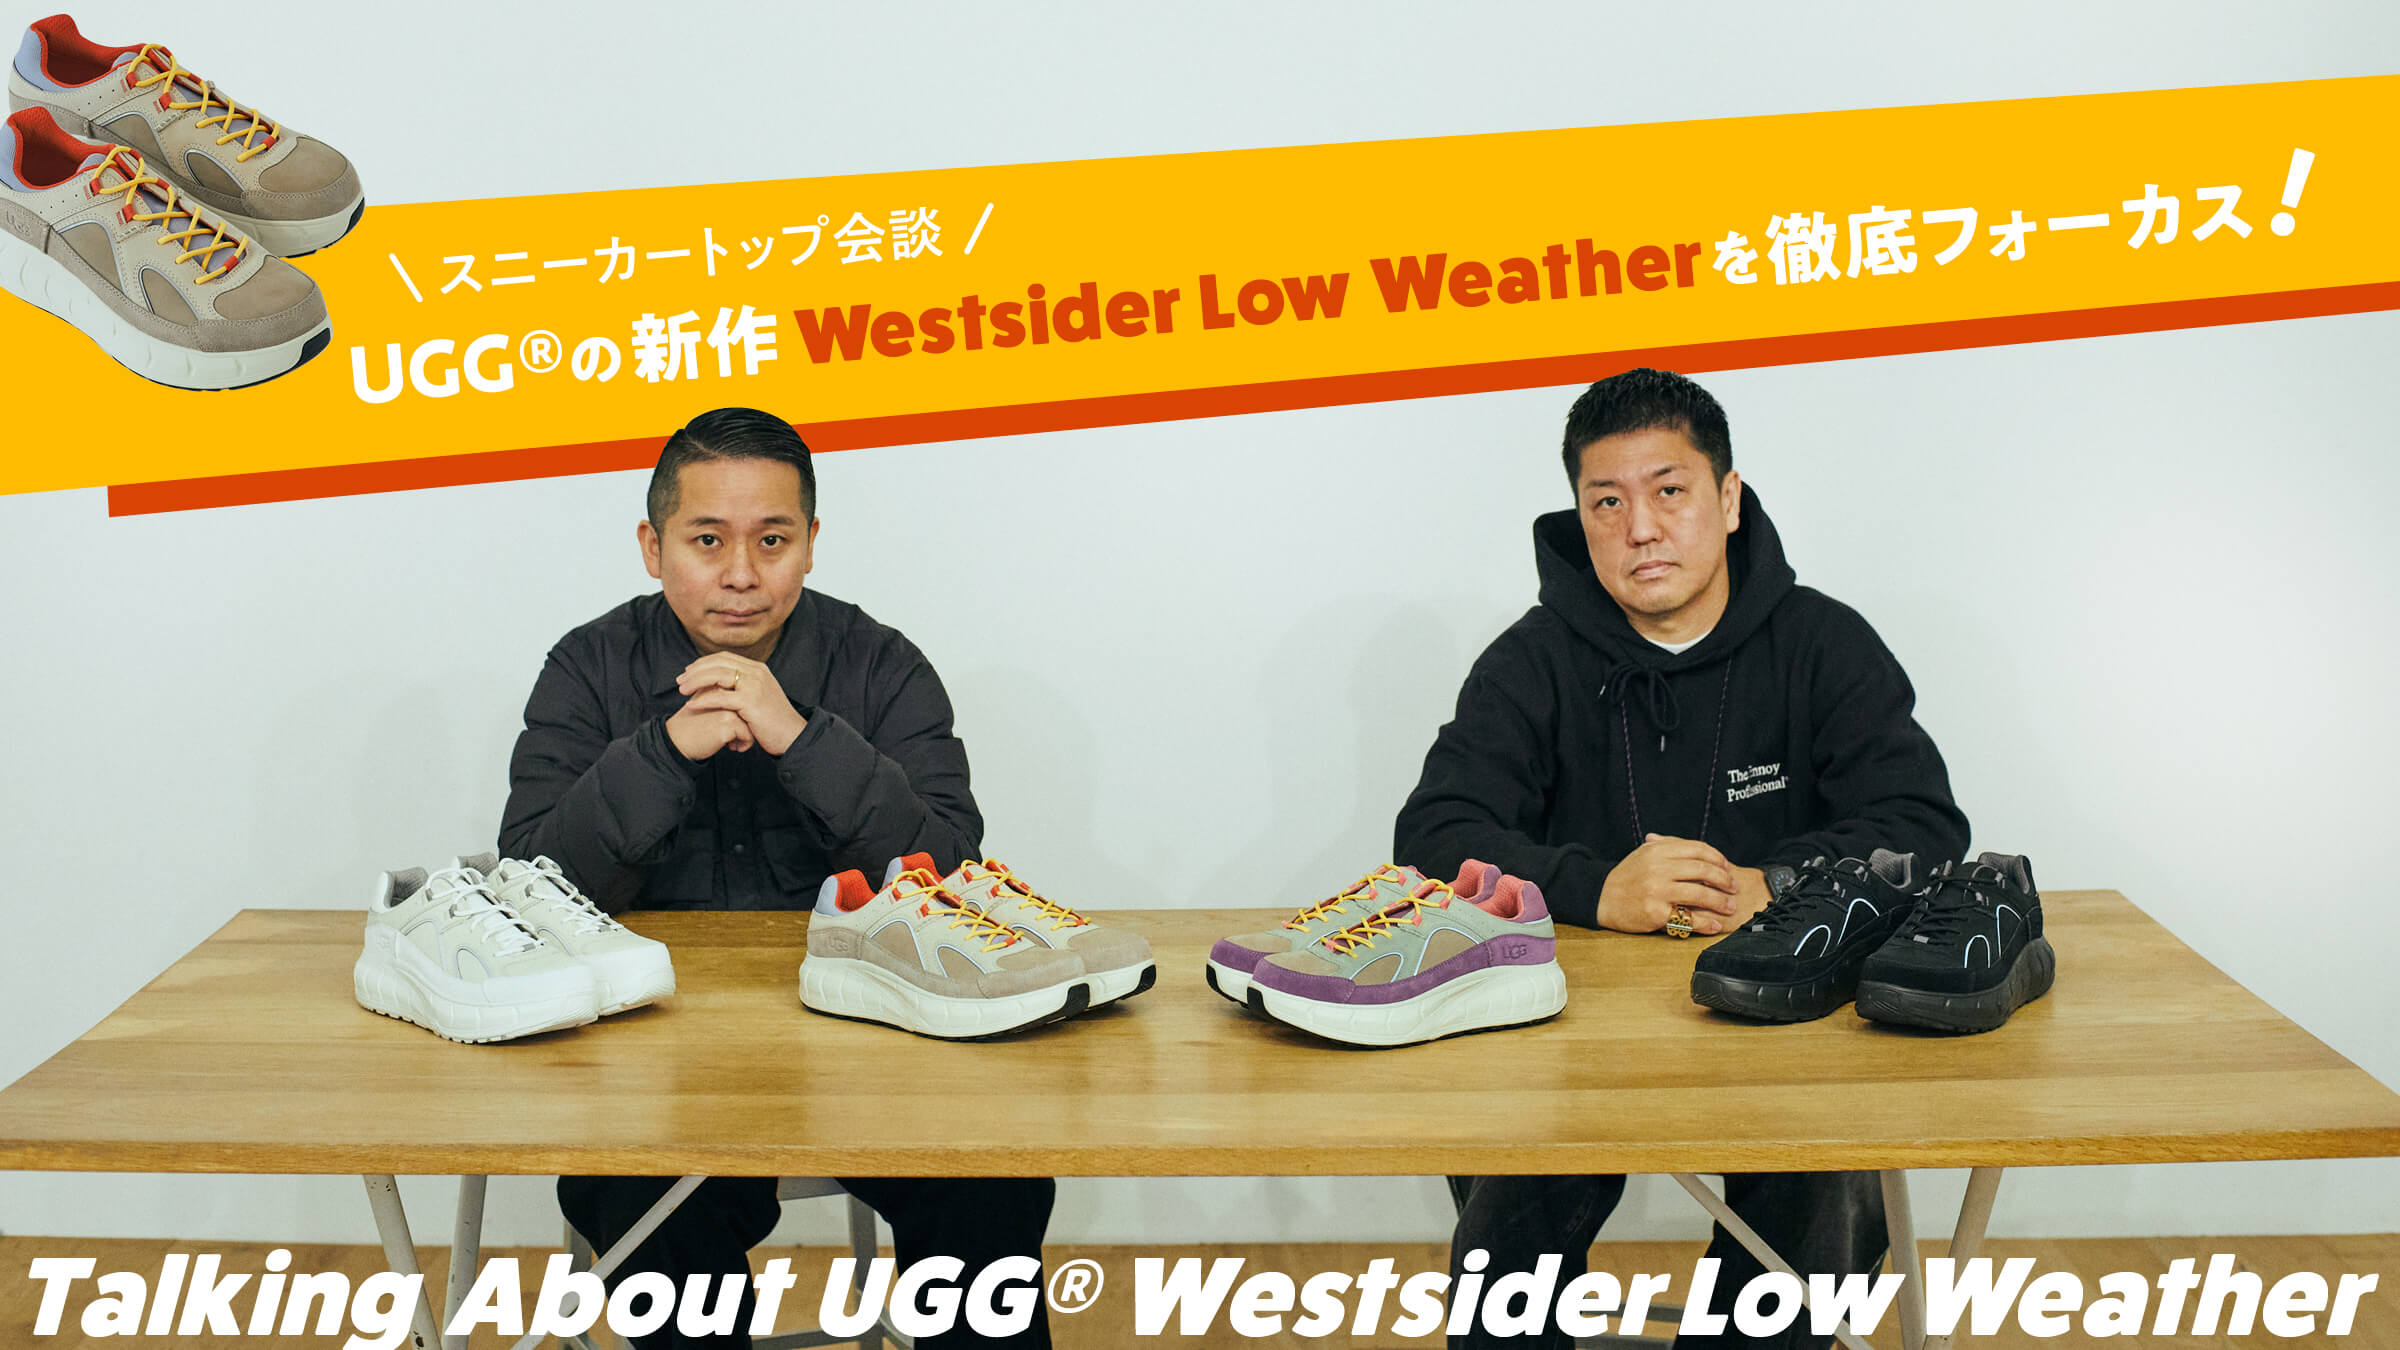 スニーカートップ会談。UGG®の新作Westsider Low Weatherを徹底